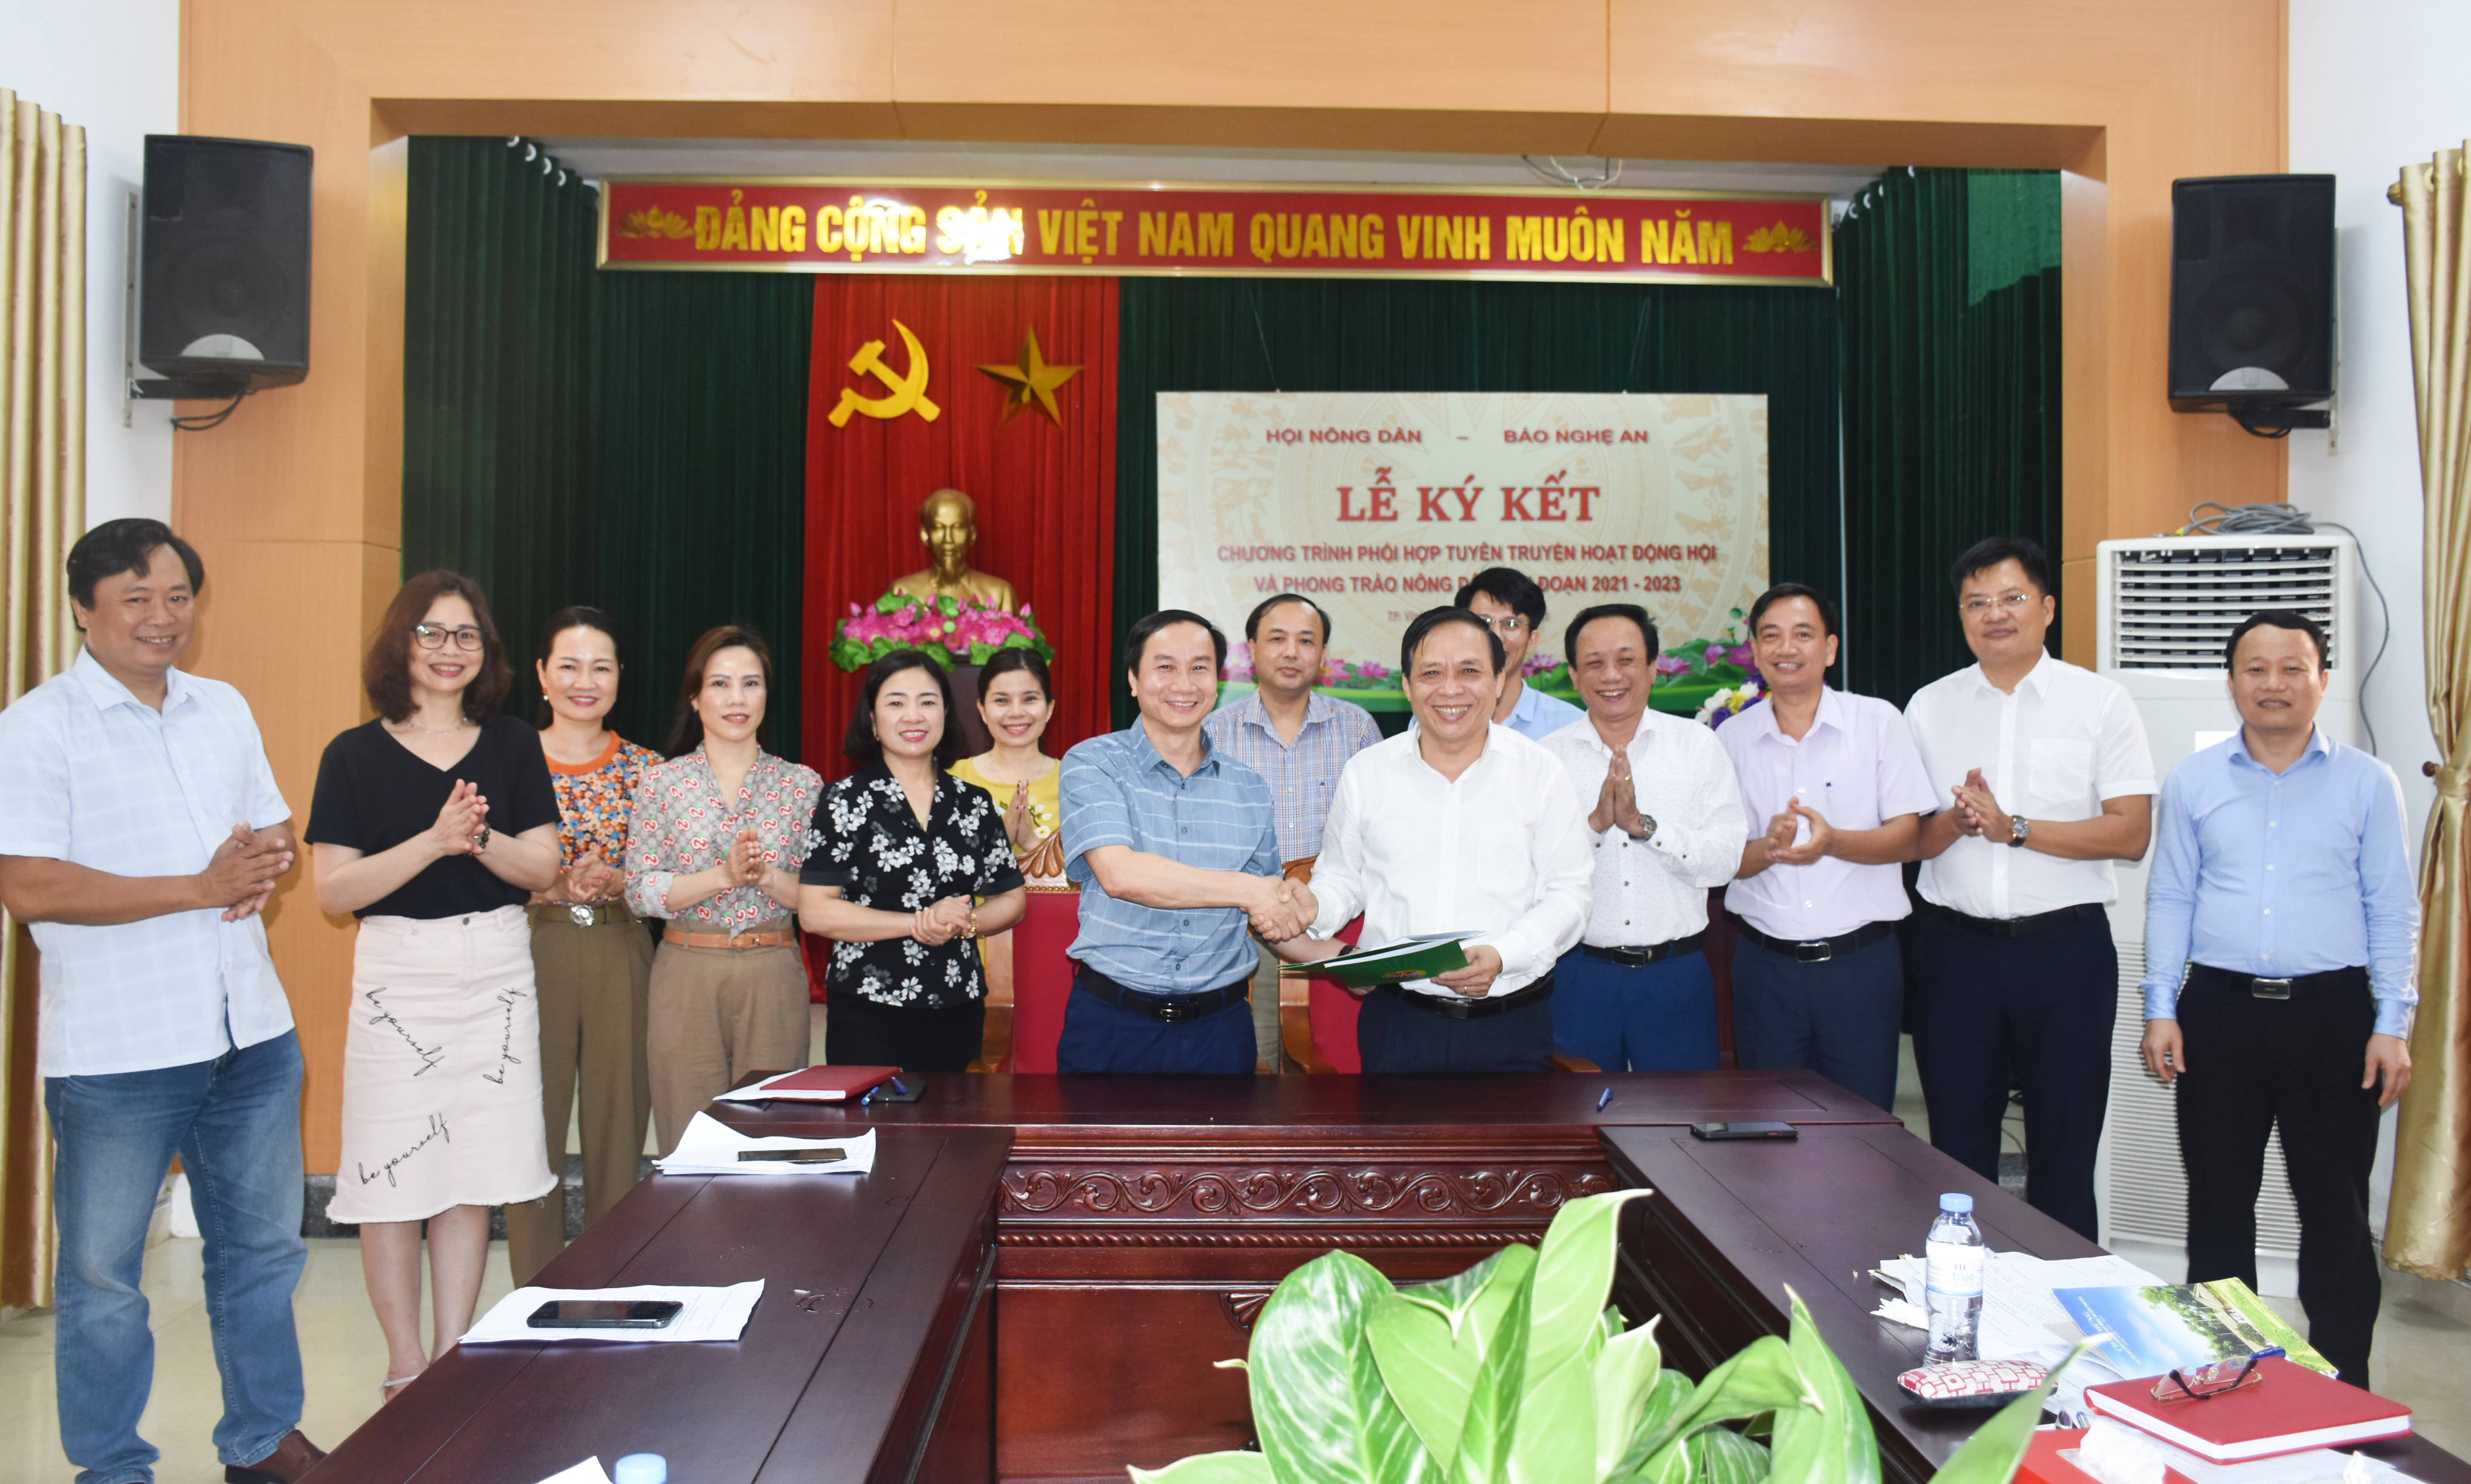 Ký kết chương trình phối hợp giữa Báo Nghệ An và Hội Nông dân tỉnh. Ảnh: Thanh Lê